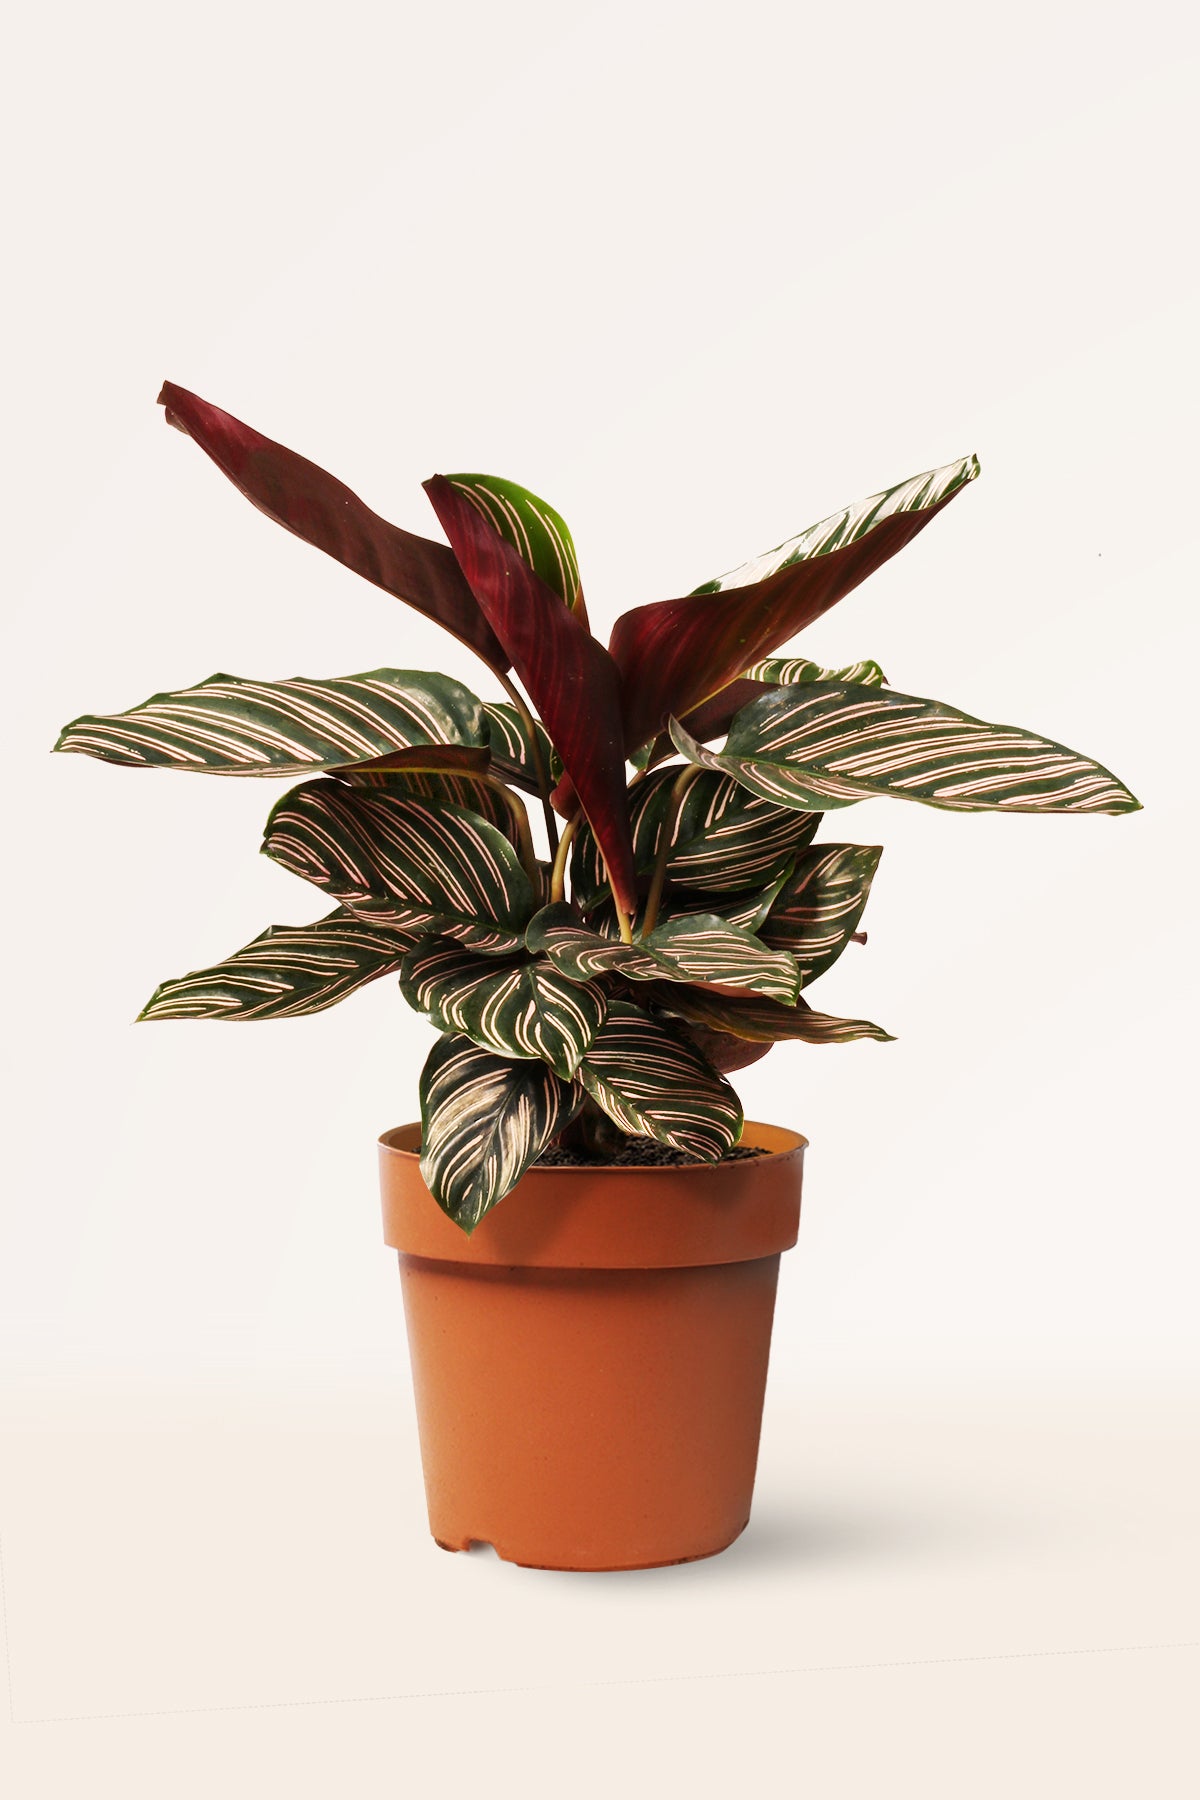 Calathea Ornata | Comprar plantas online | Plantas de interior | APRILPLANTS